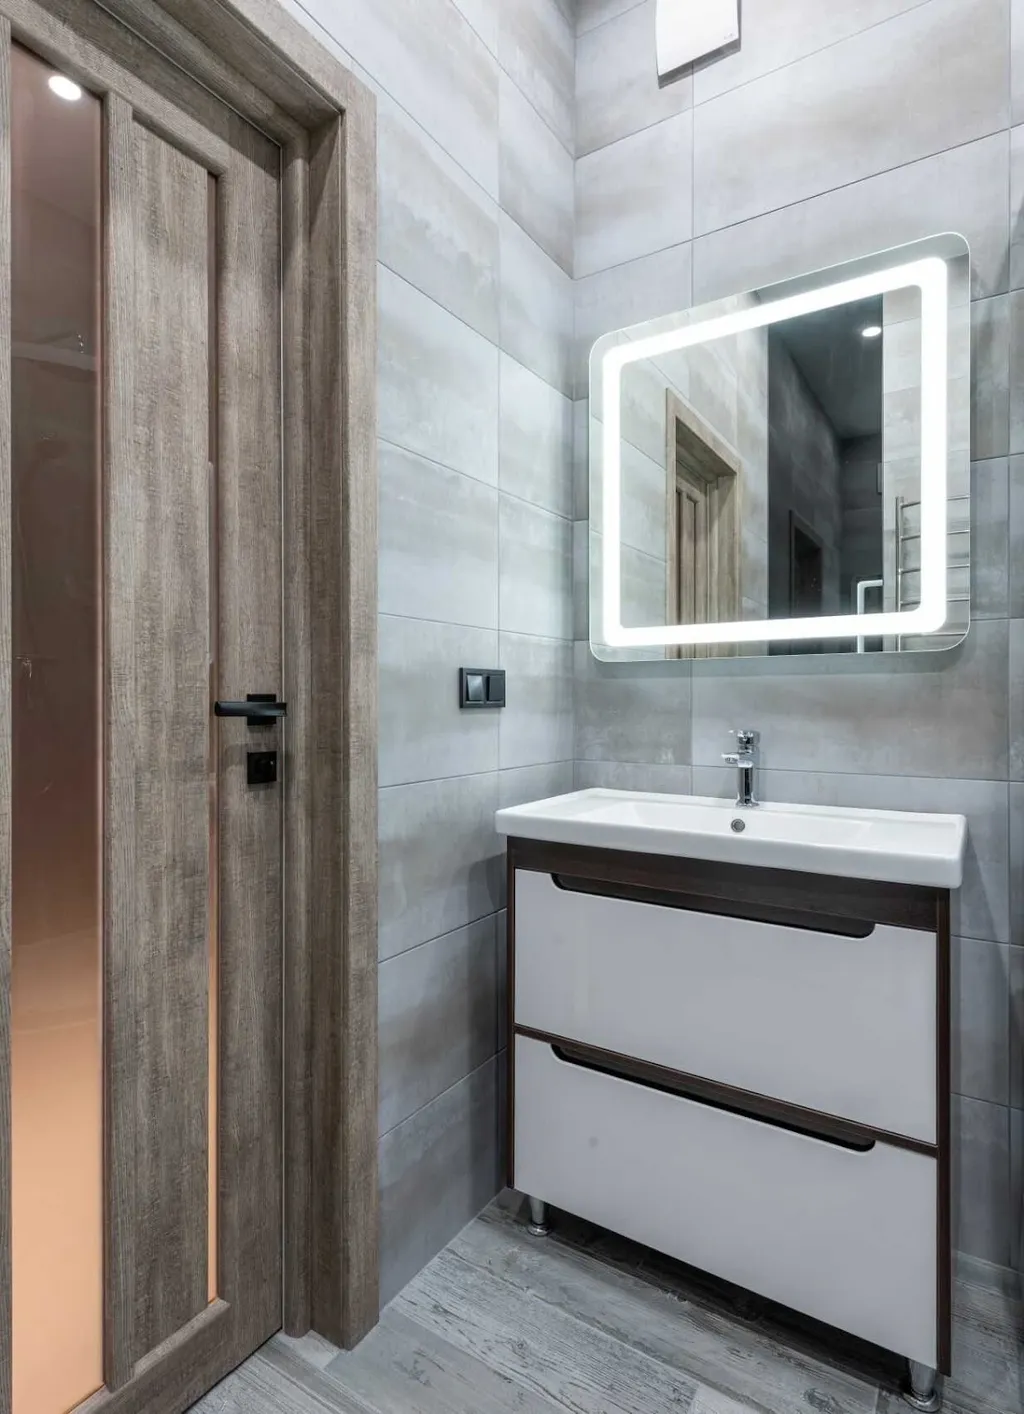 Cửa nhà vệ sinh từ gỗ công nghiệp kết hợp kính và phù hợp với màu tường giúp tăng vẻ đẹp không gian